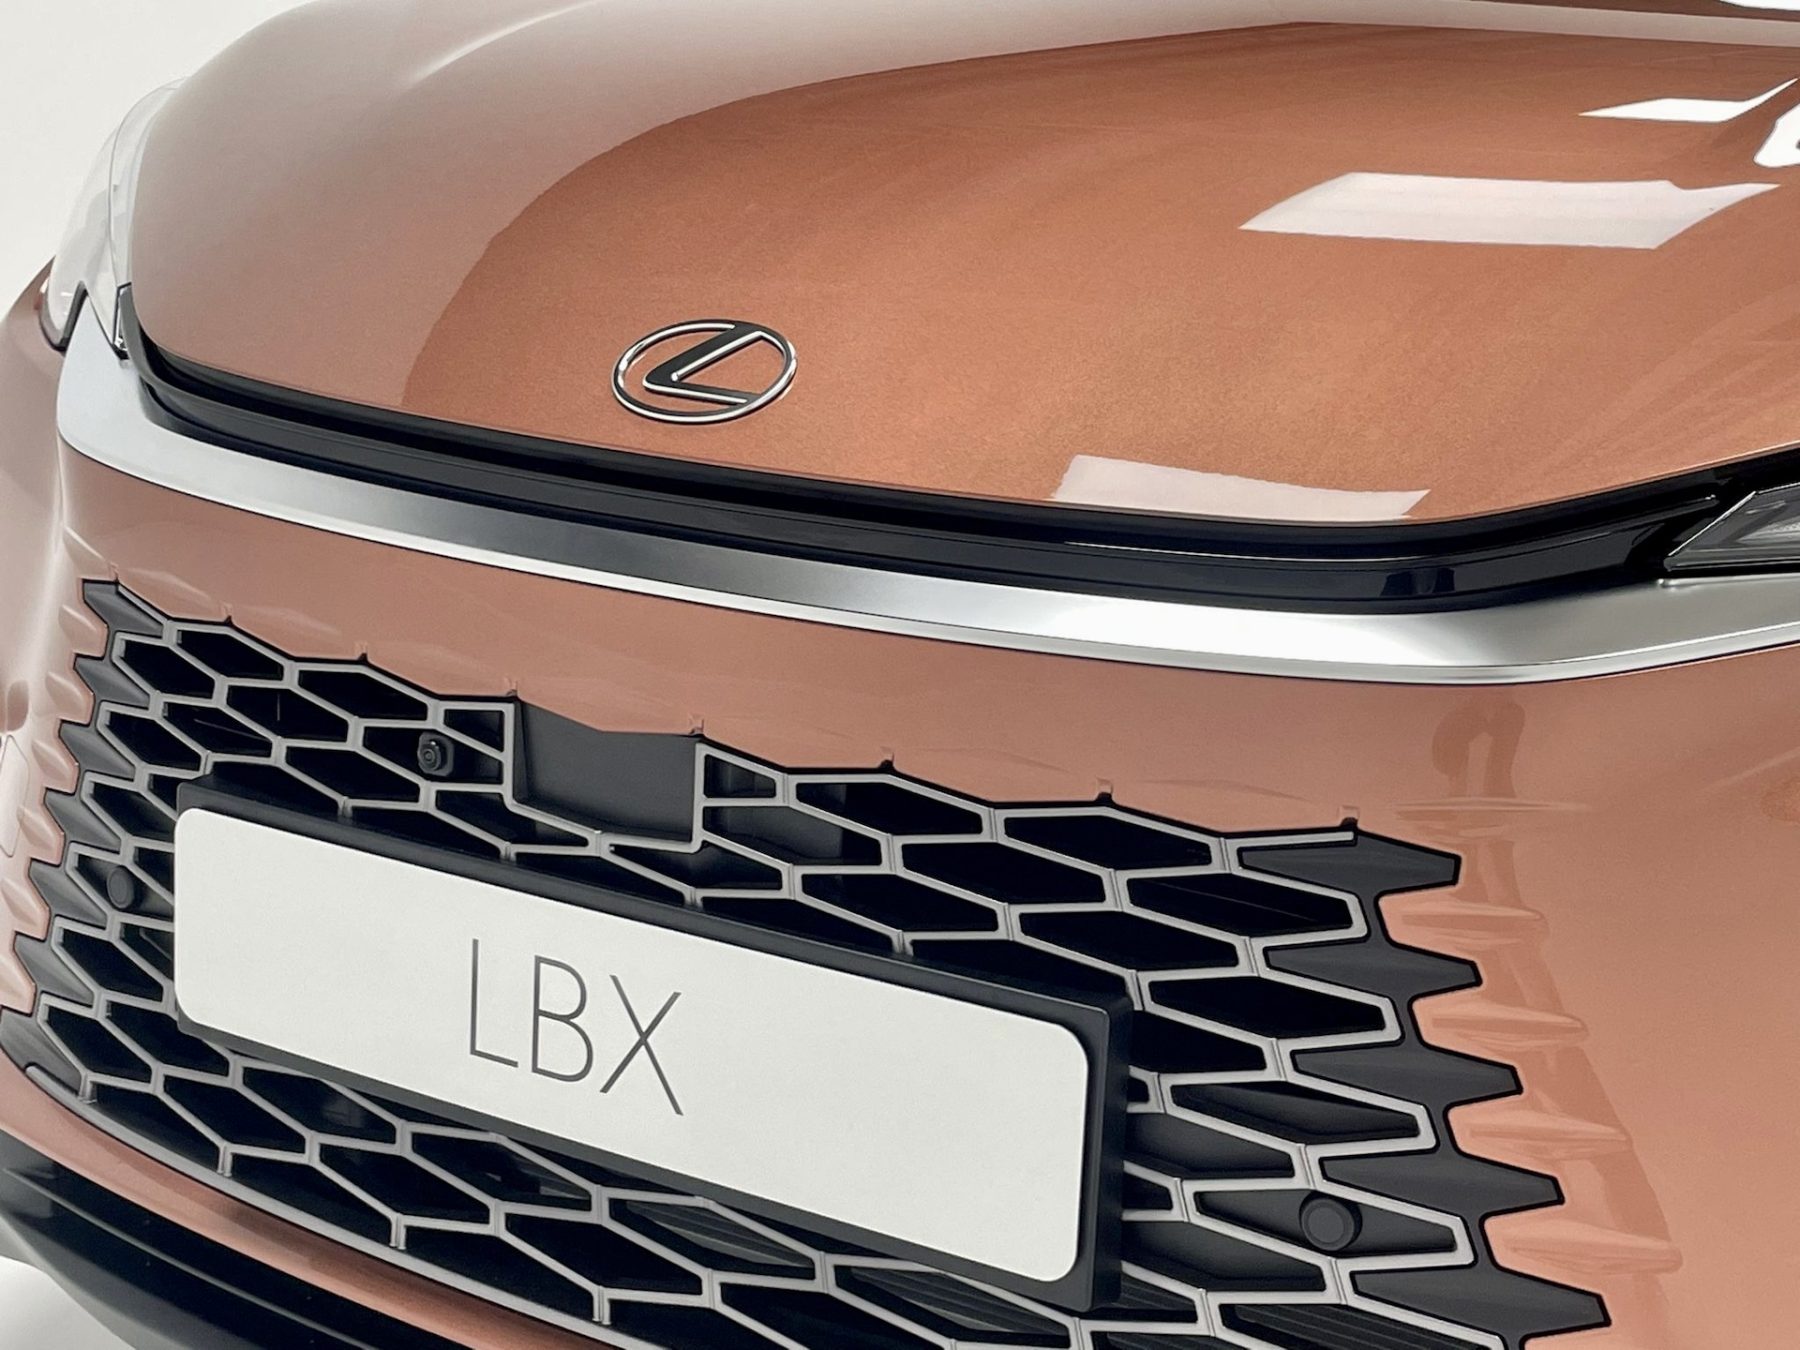 Lexus LBX premiere